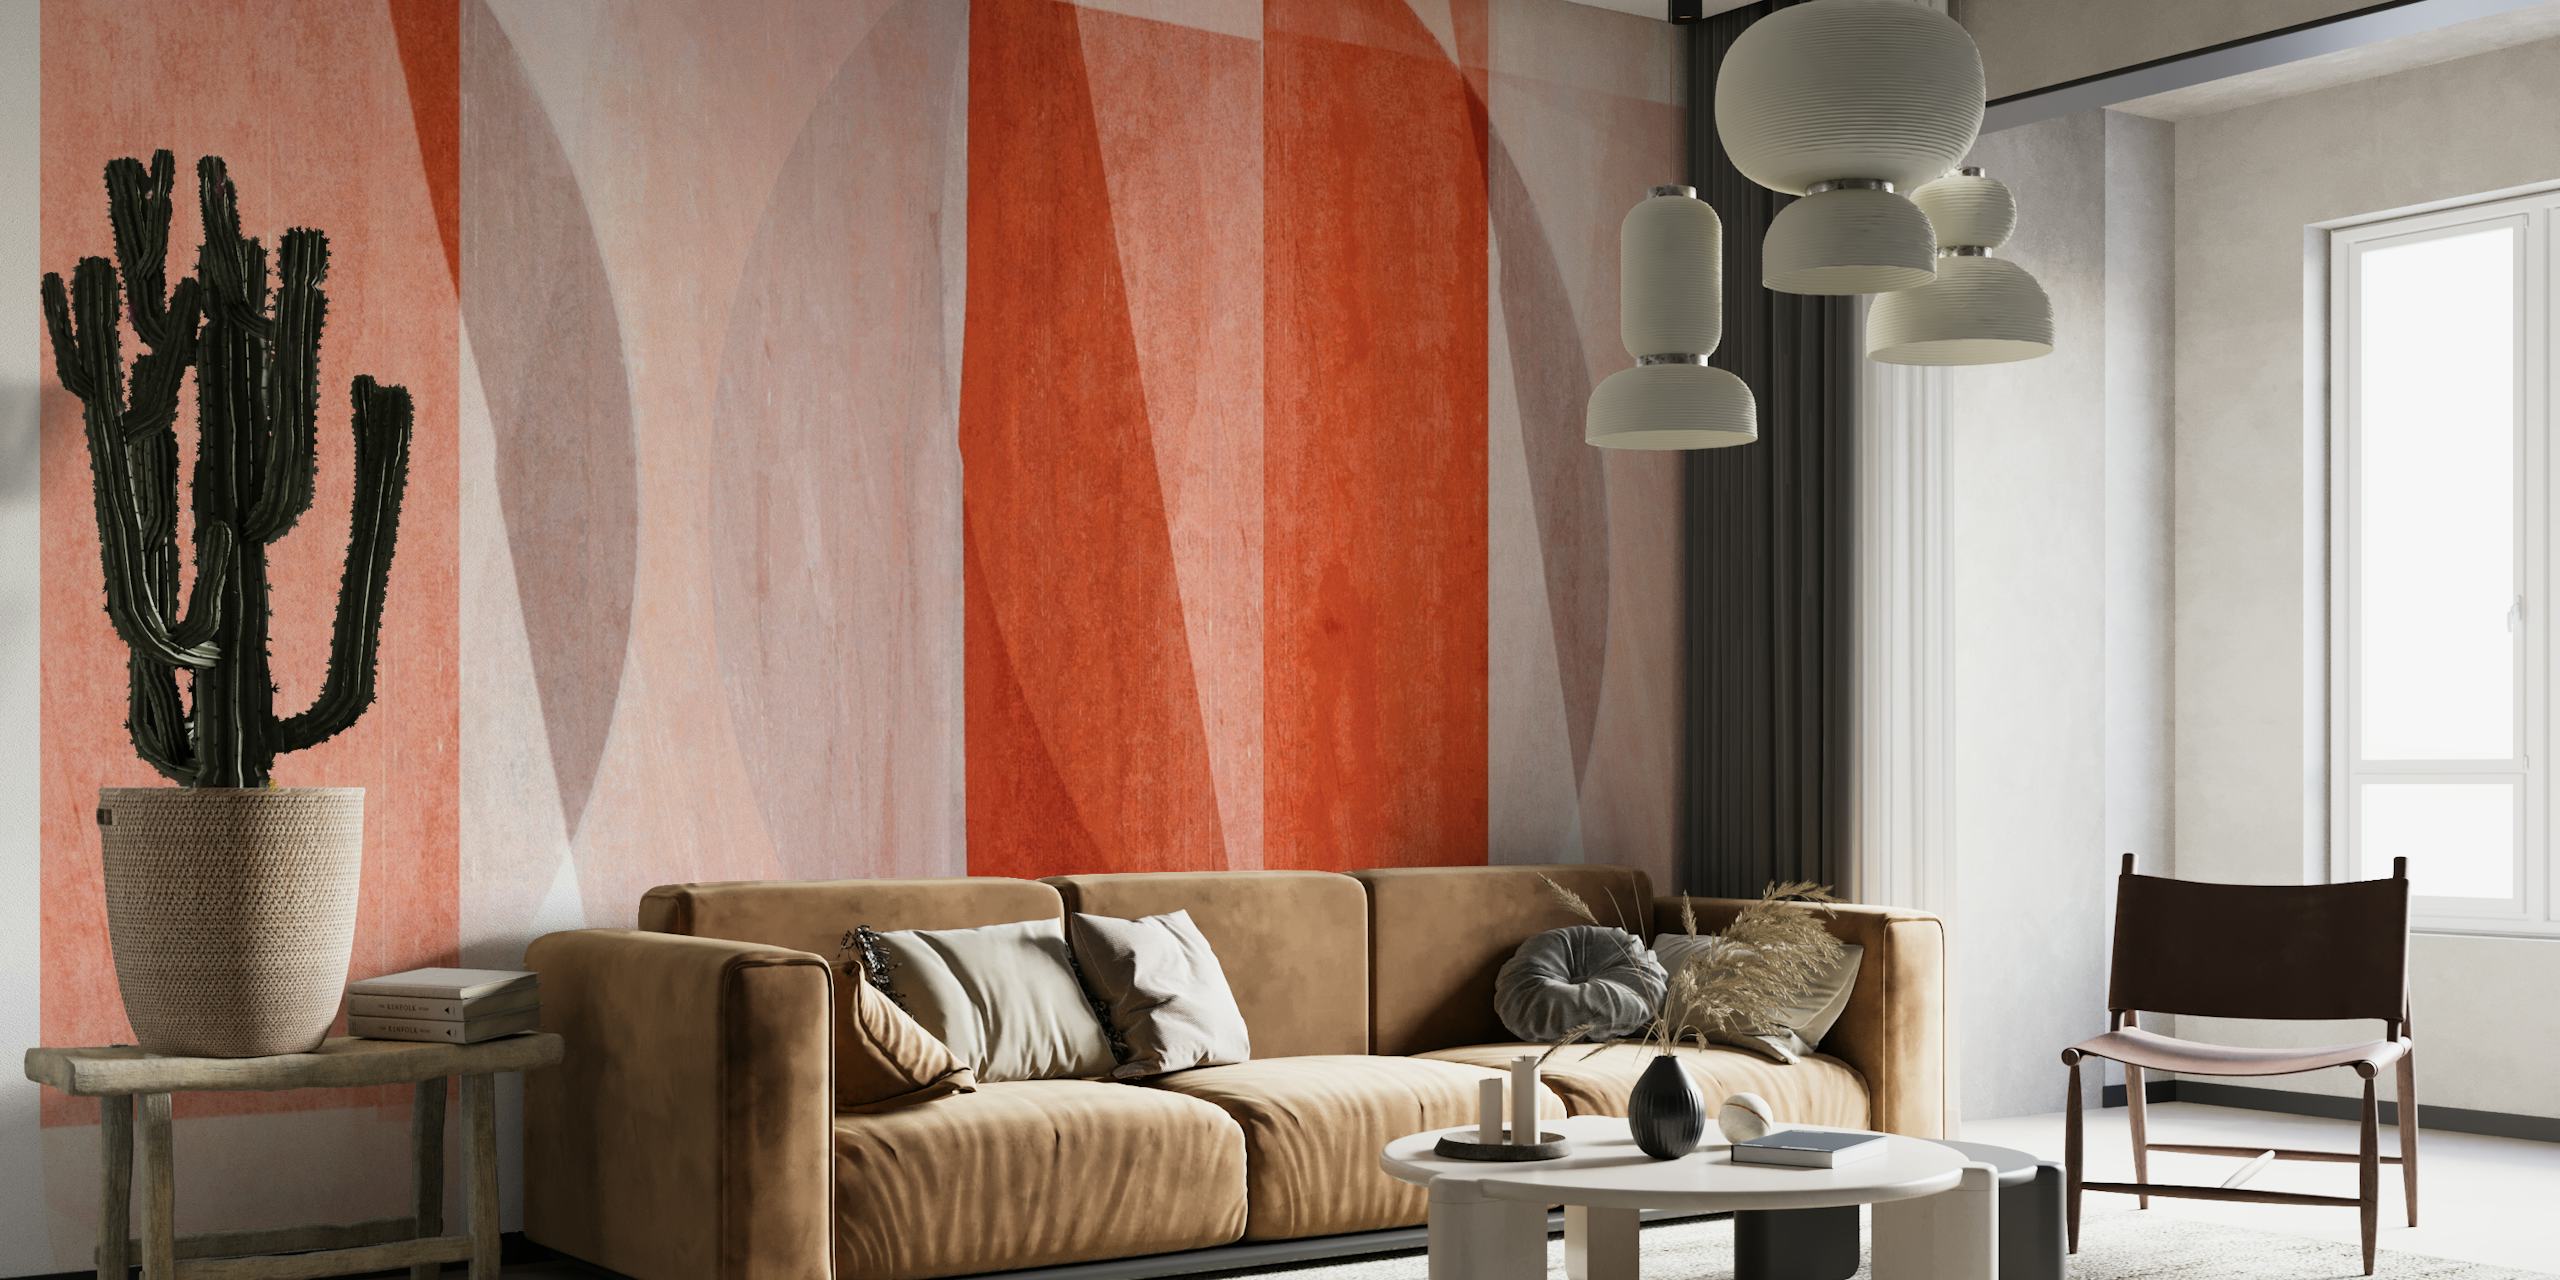 Topli Bauhaus Art geometrijski zidni mural u crvenim tonovima